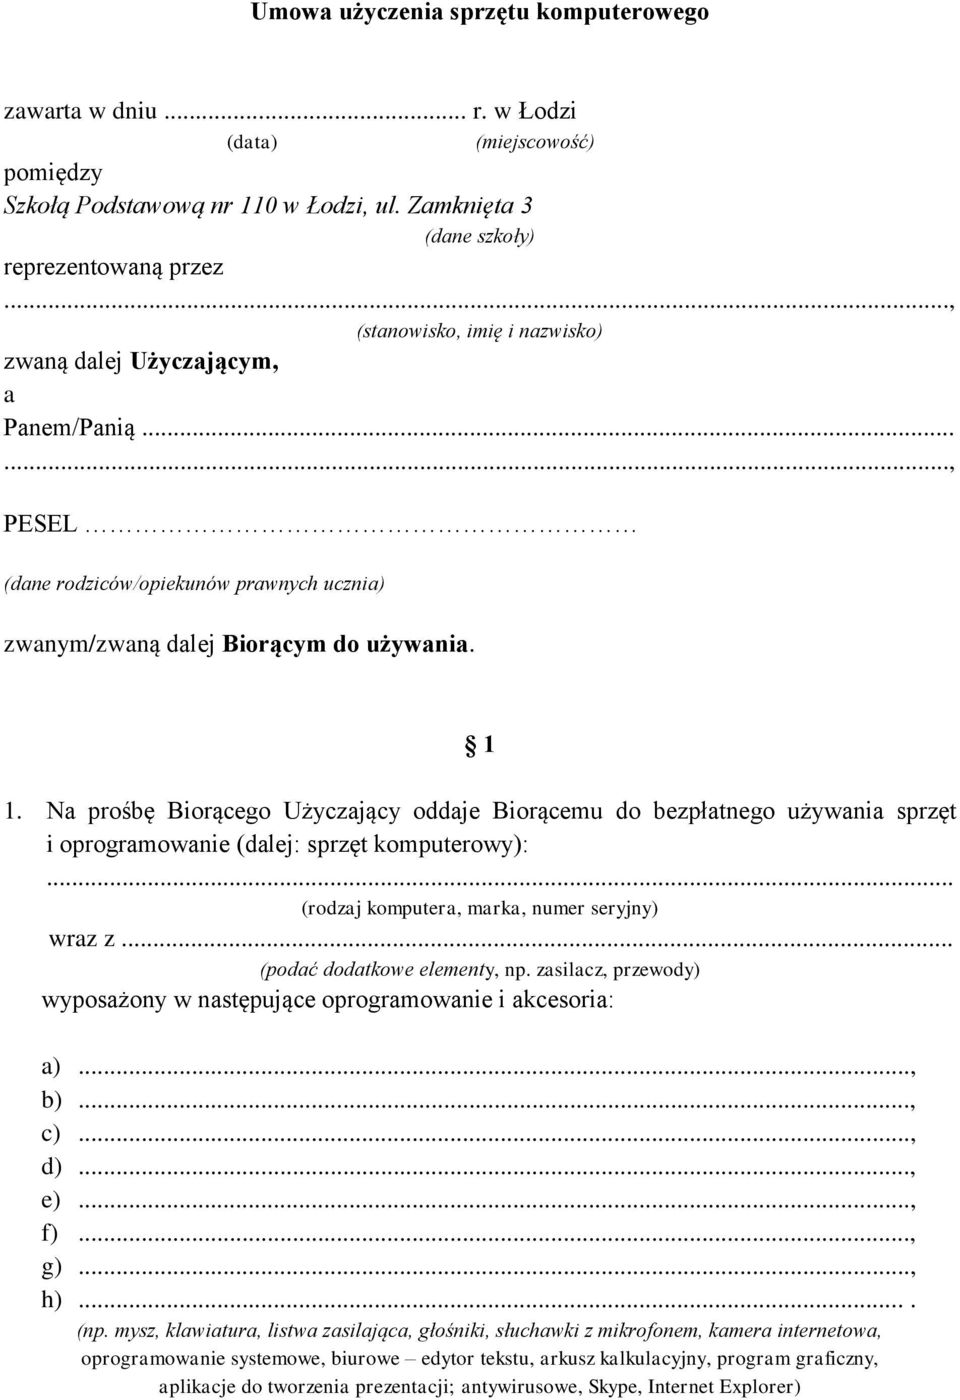 Umowa użyczenia sprzętu komputerowego - PDF Darmowe pobieranie